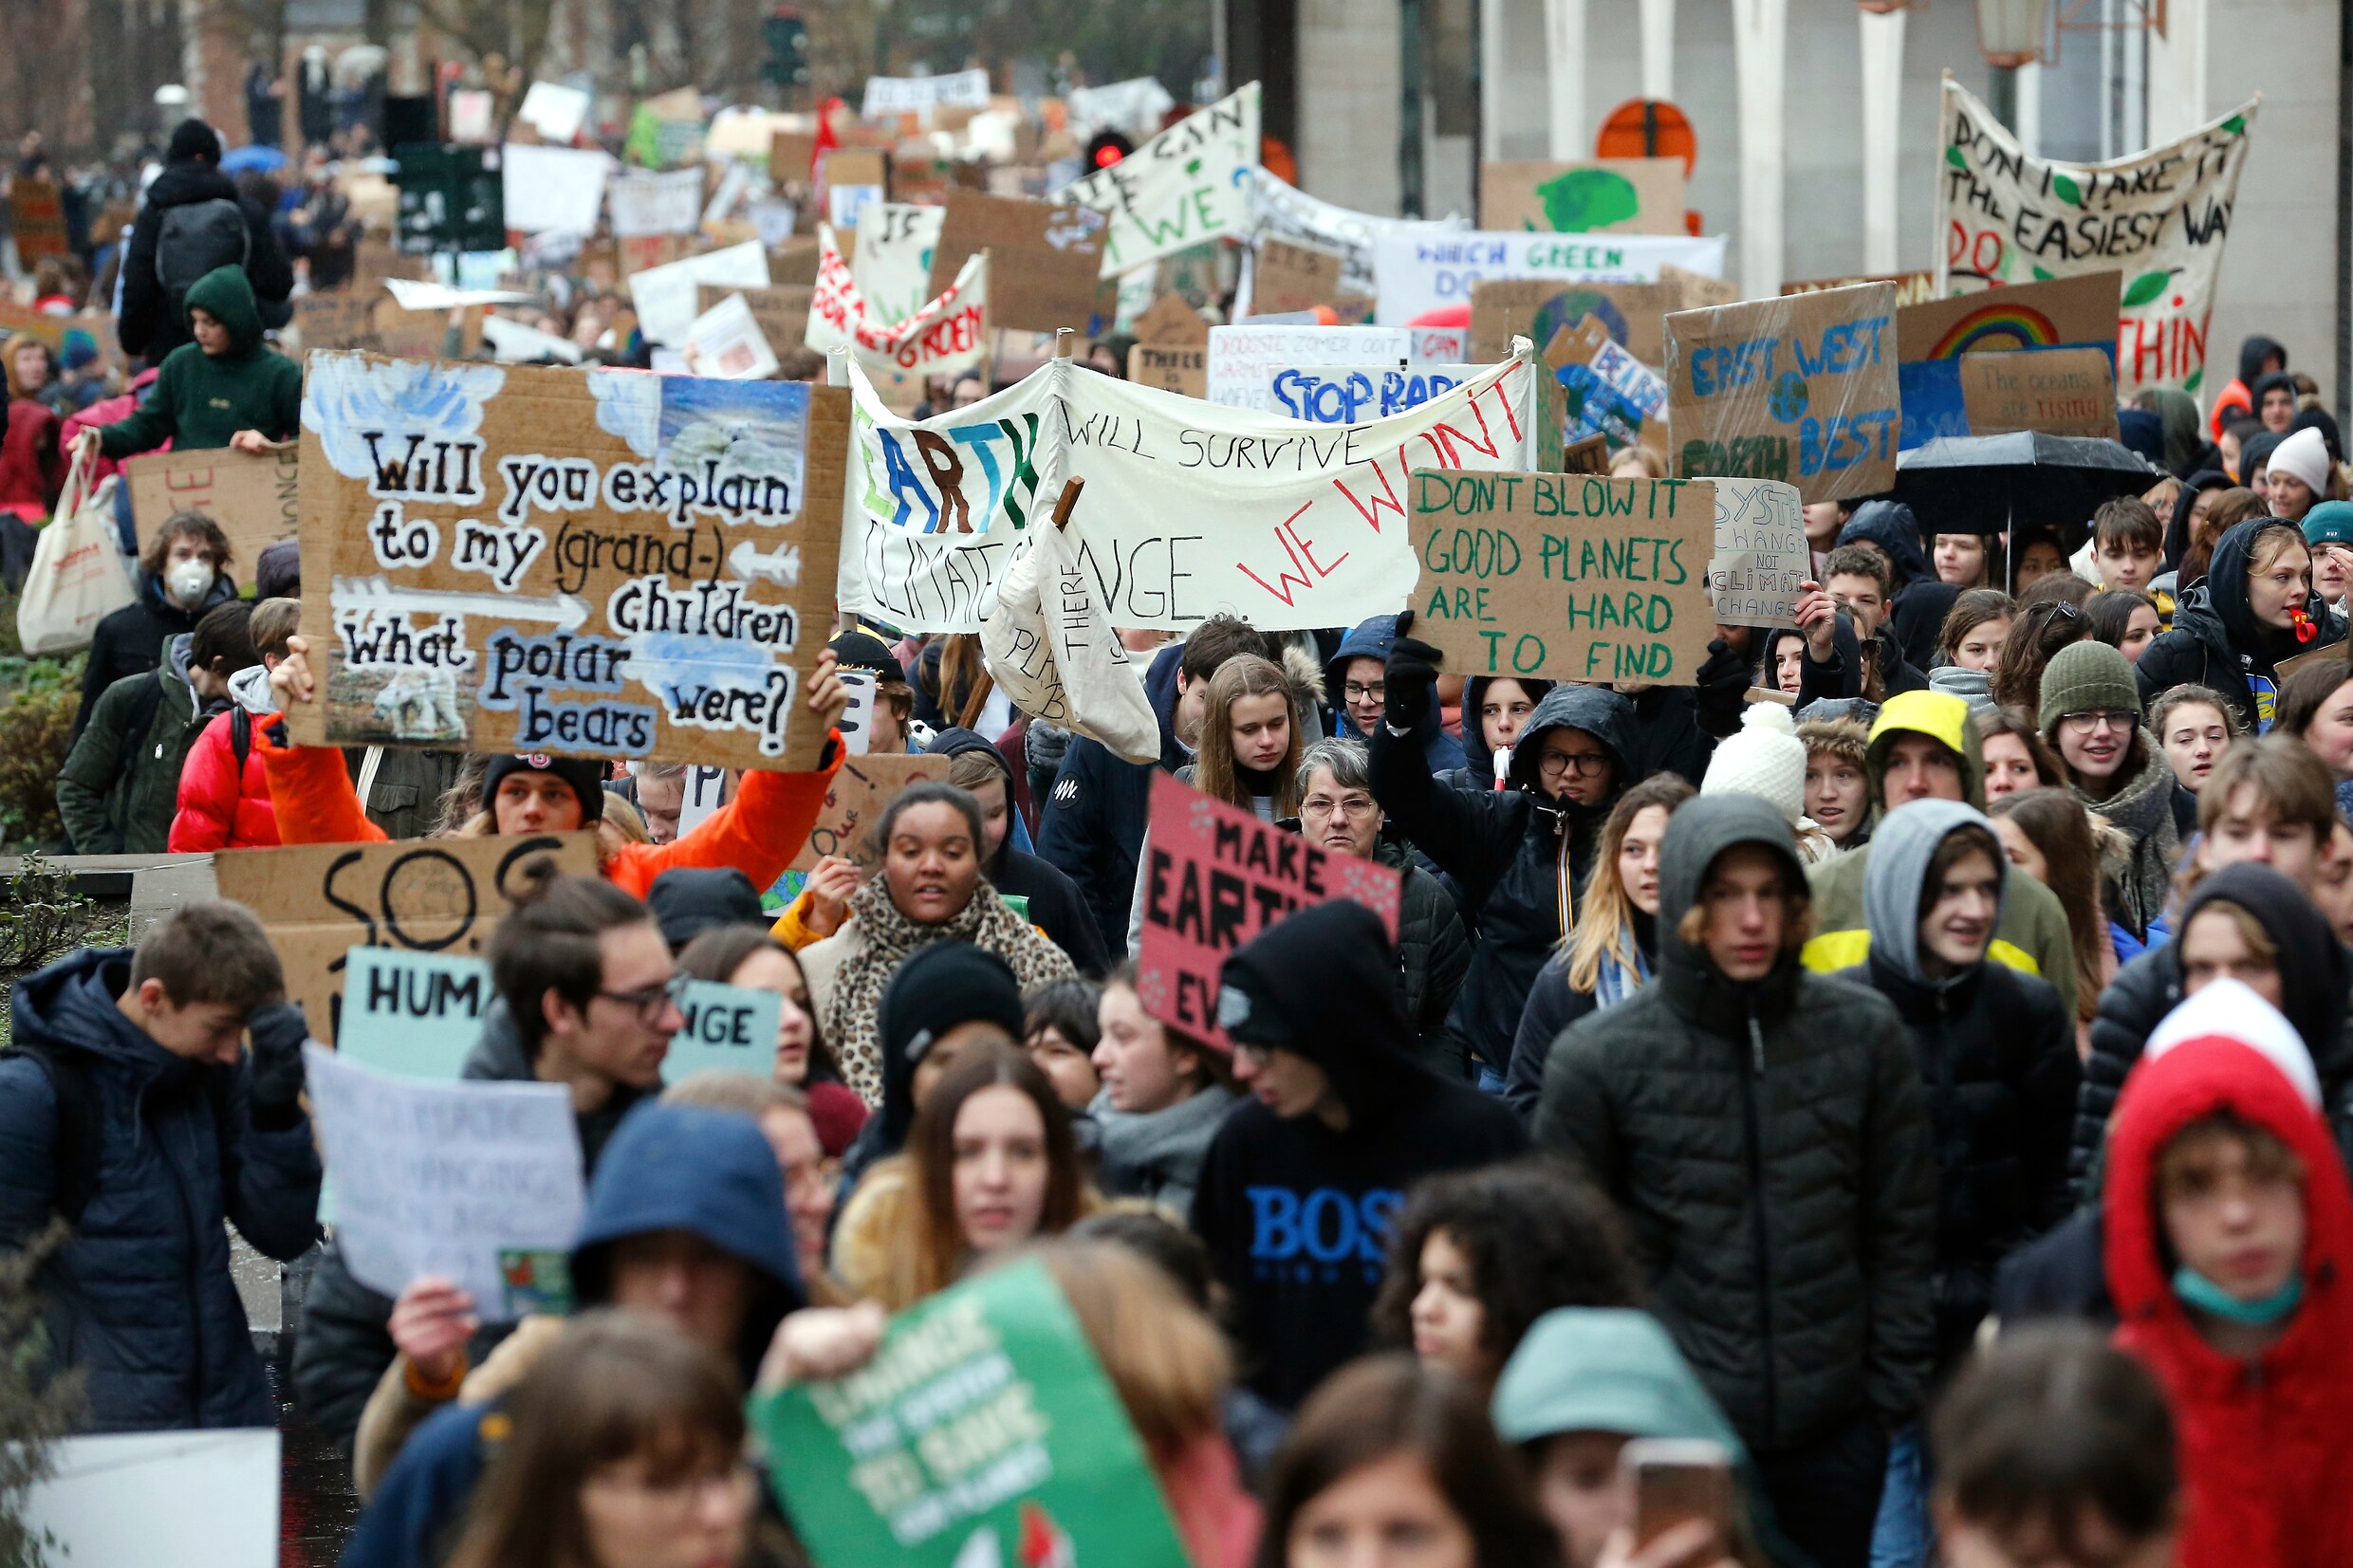 12.500 klimaatjongeren in Brussel: “Dit is een nieuwe generatie die opstaat”